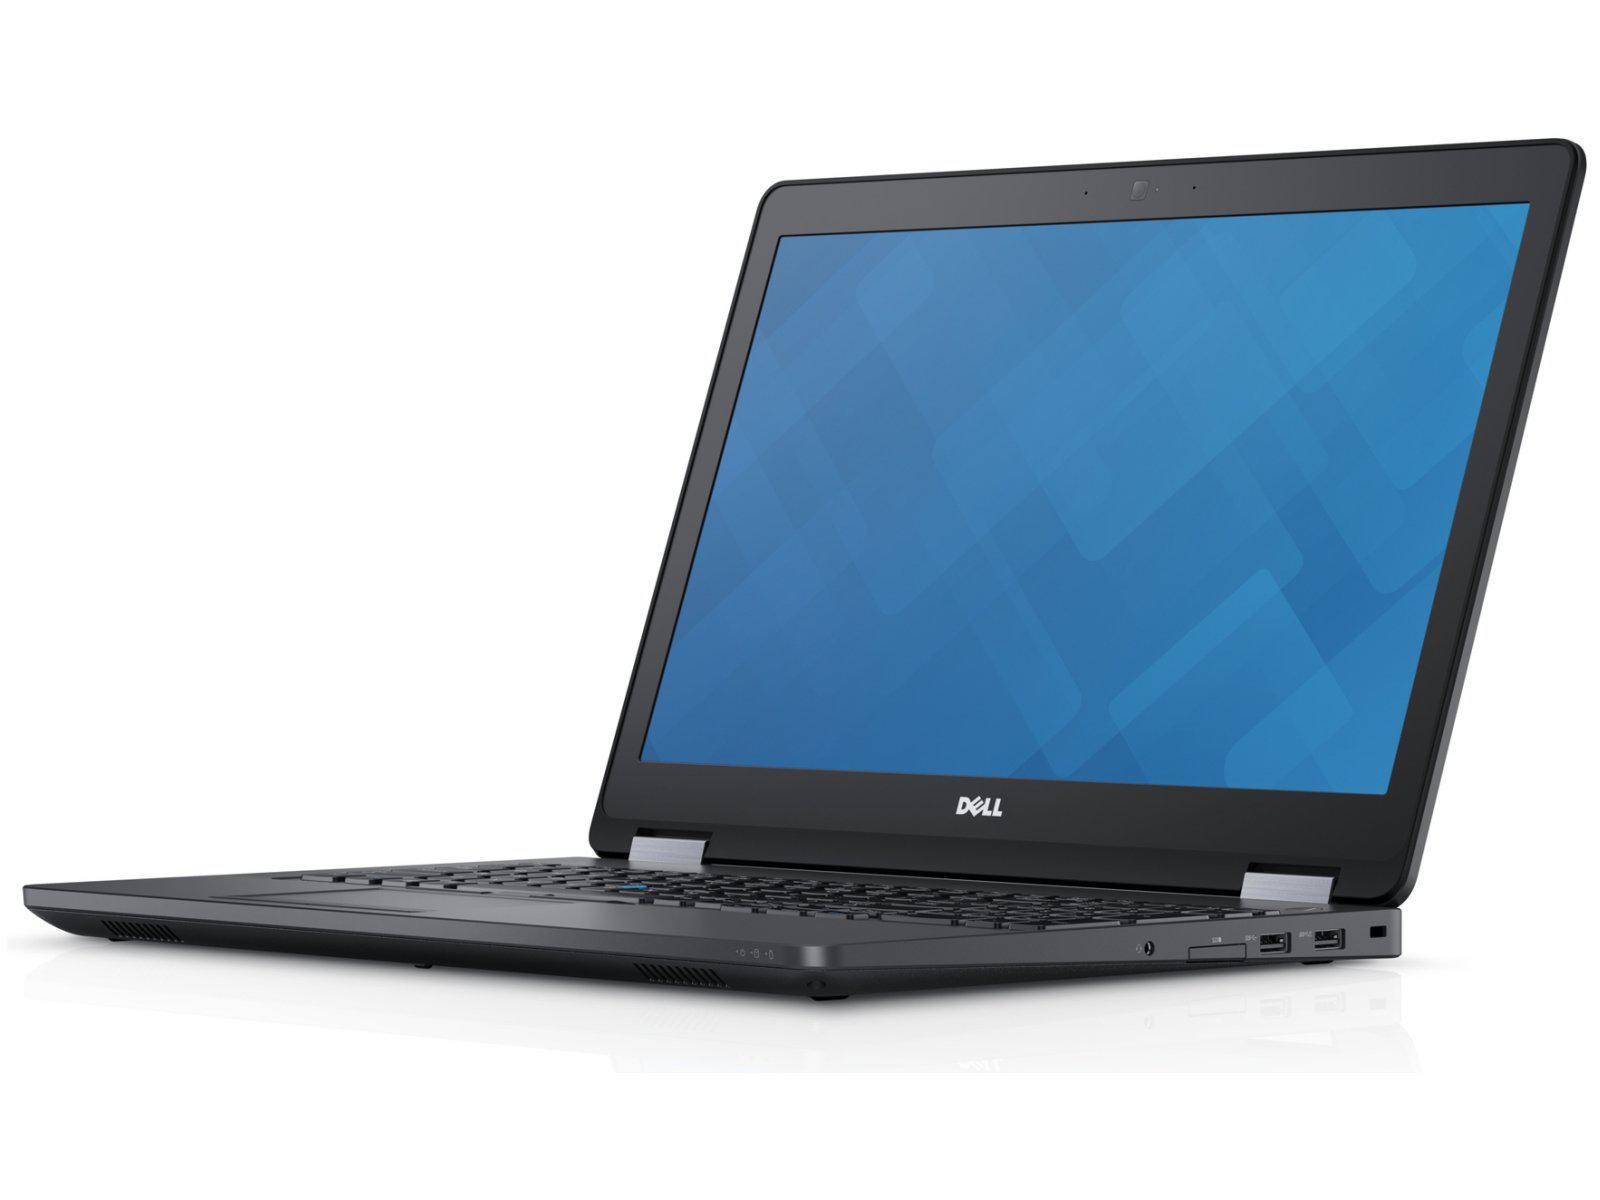 Dell Latitude E5570 15.6" Laptop, Intel Quad Core i7-6820HQ 2.7GHz, Radeon 2GB GPU, Used laptops in Dubai